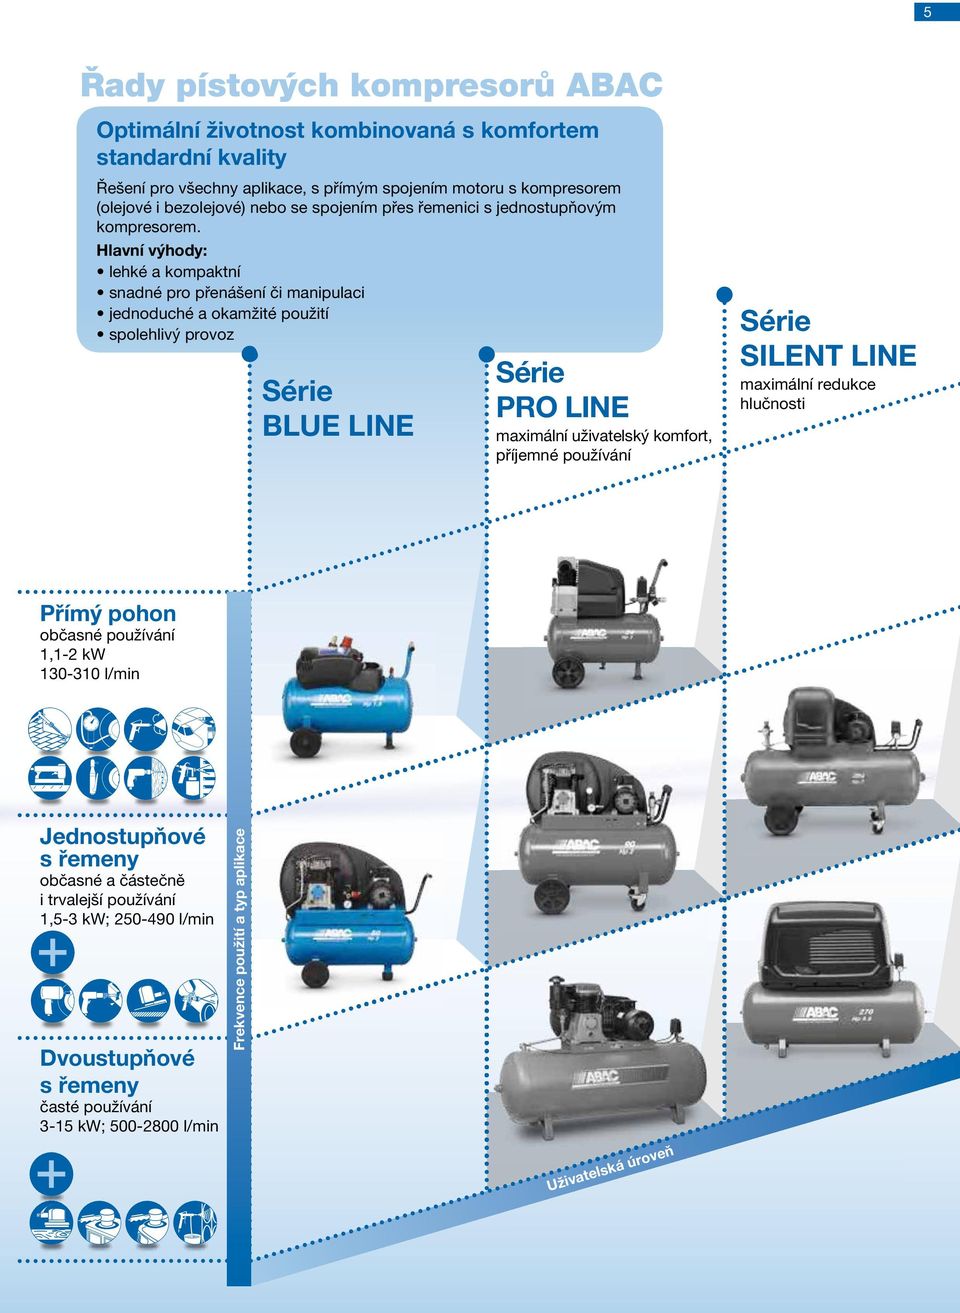 Hlavní výhody: kompaktní provoz Série BLUE LINE Série PRO LINE maximální uživatelský komfort, příjemné používání Série SILENT LINE maximální redukce hlučnosti Přímý